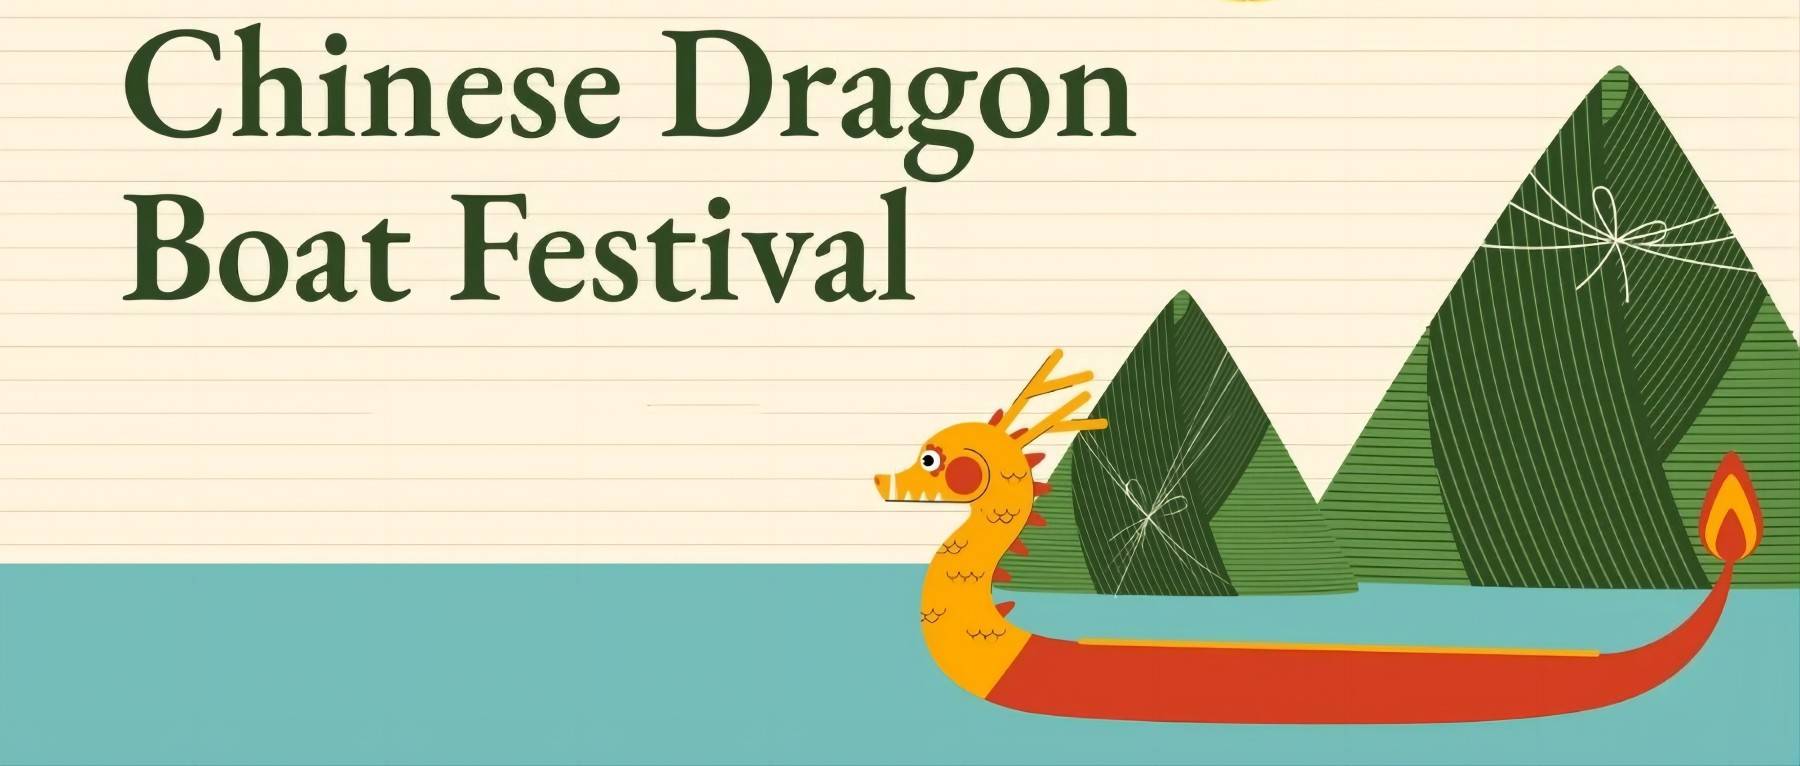 Фестиваль лодок-драконов, Цзунсян переполнен